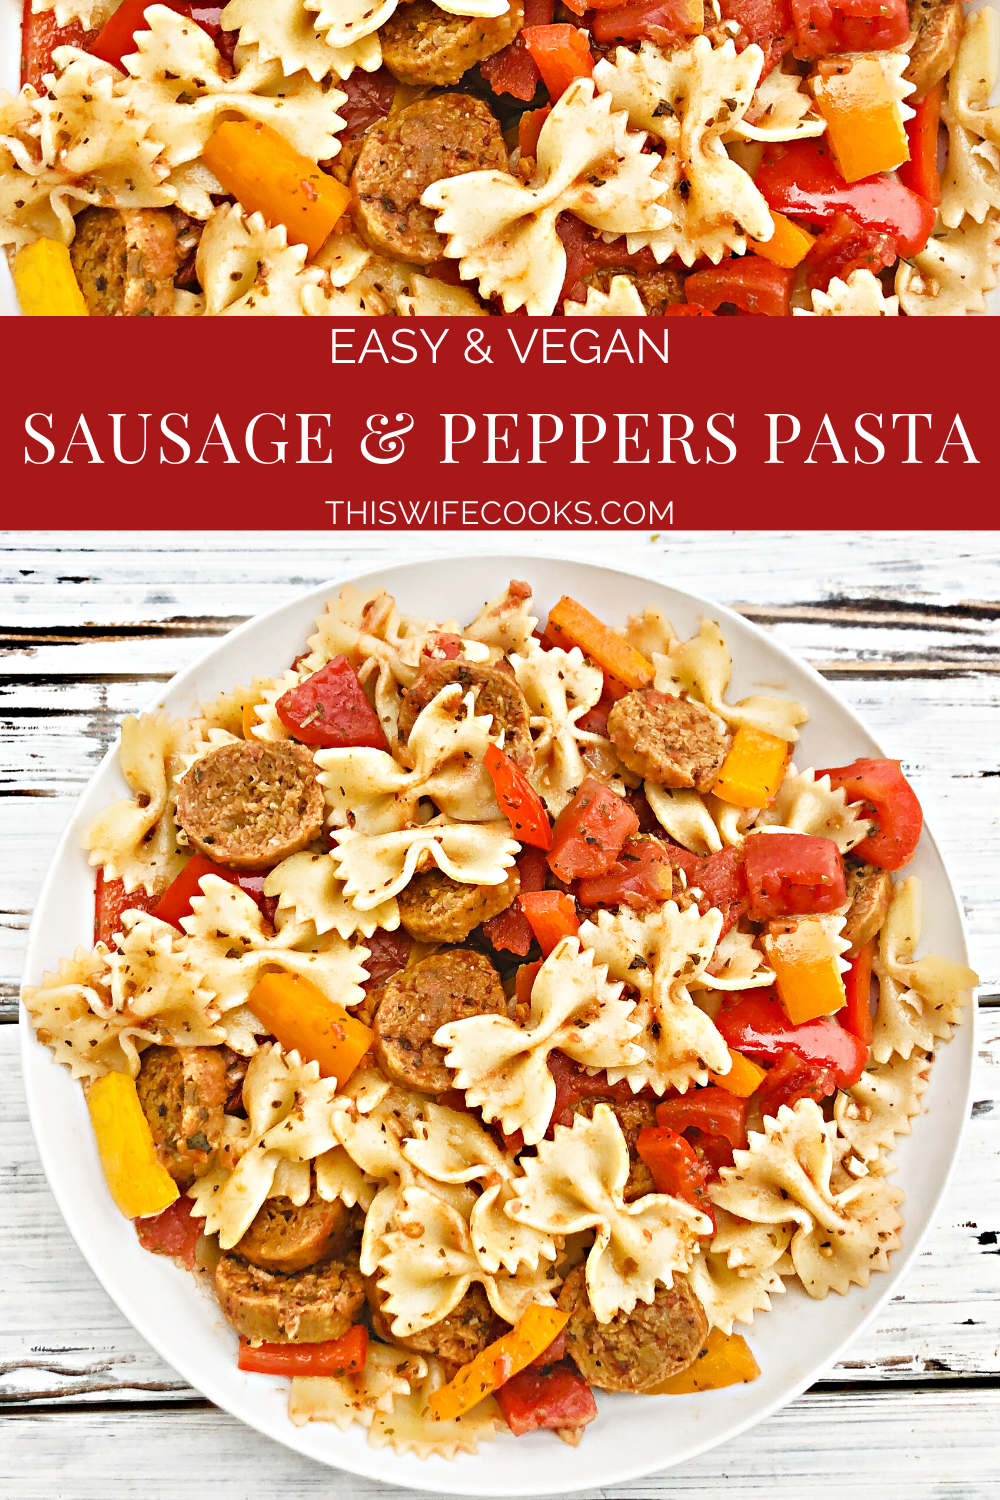 Vegan Sausage and Peppers Pasta - Egy gyors és egyszerű növényi alapú serpenyős vacsora fűszeres olasz kolbásszal töltve, színes paprikával és tésztával, amit egy könnyű és földes paradicsomszószban dobunk össze. Legfeljebb 30 perc alatt tálalható!#sausageandpeppers #easyvegandinners #30minutemeals #vegansausagerecipes #thiswifecooksrecipes #quickandeasydinners #veganquarantinecooking #sausageandpepperspasta via @thiswifecooks